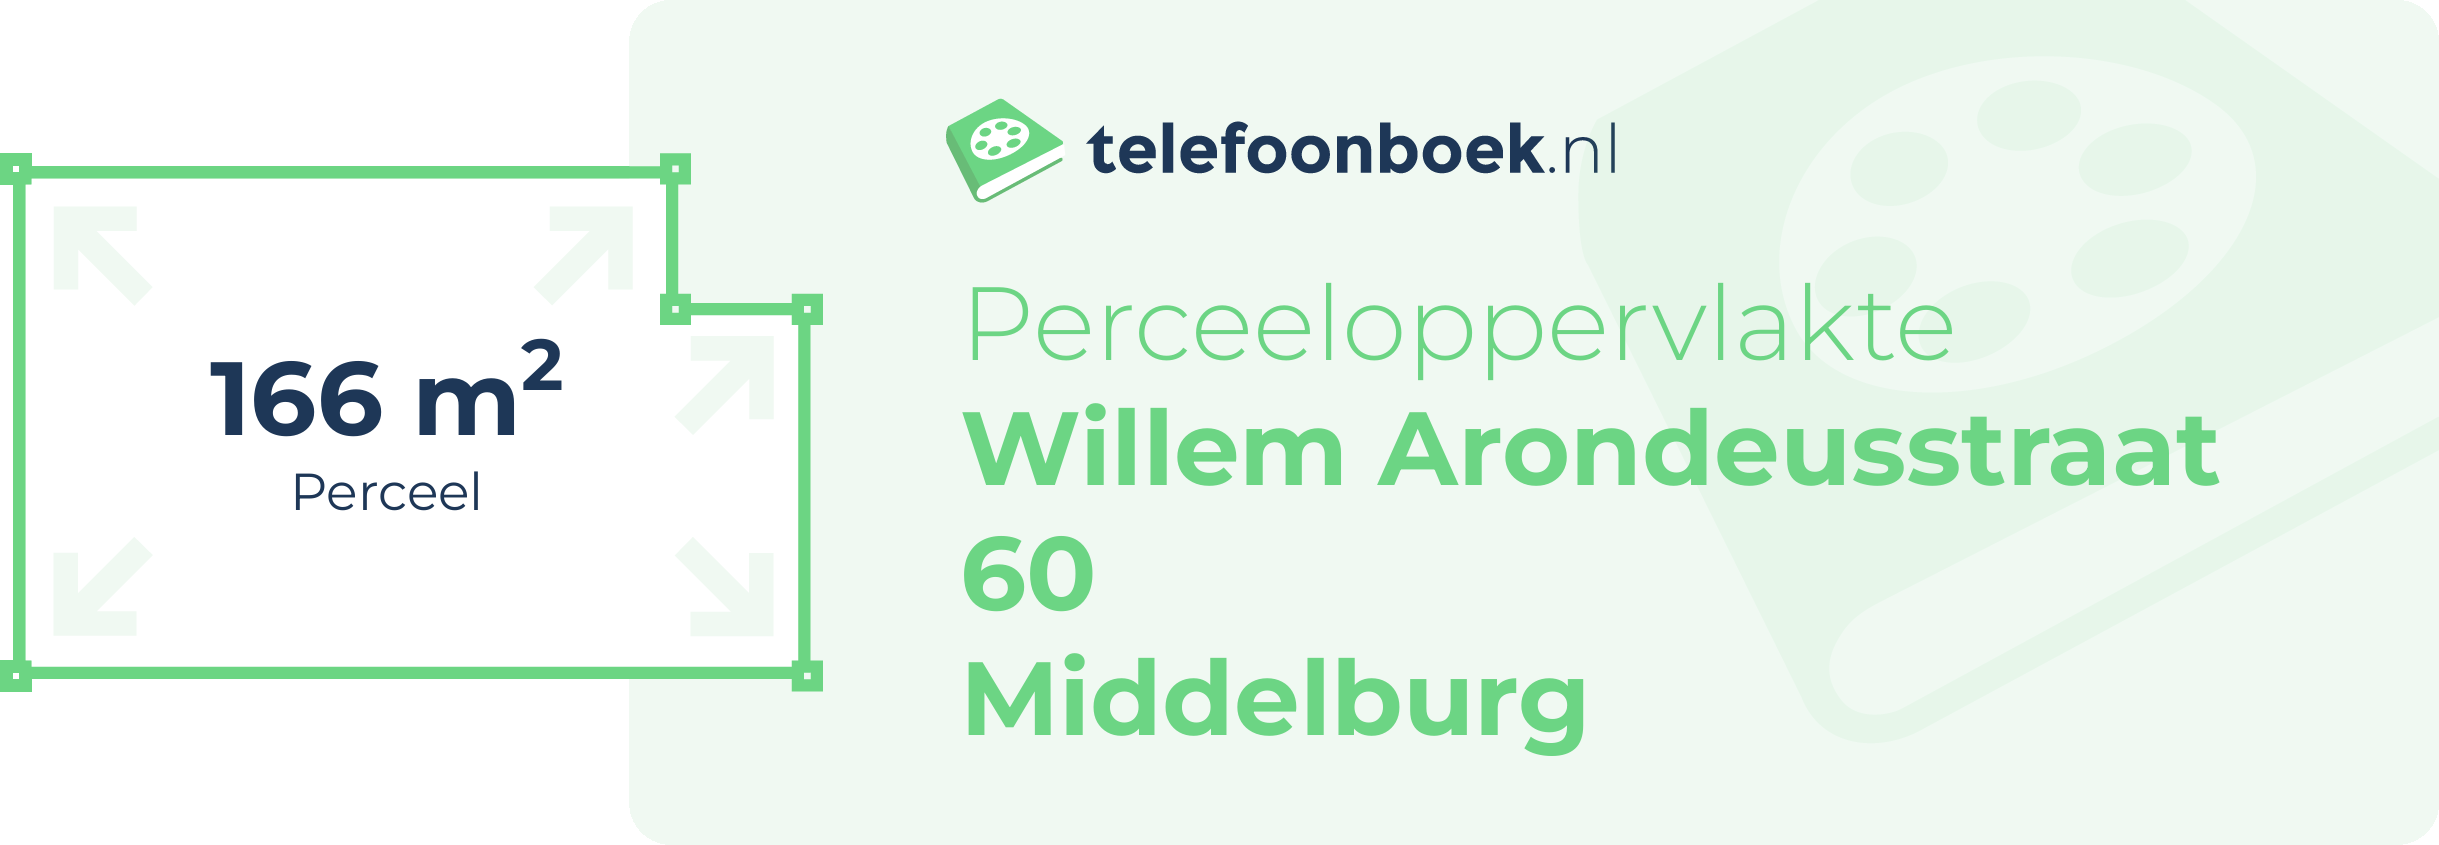 Perceeloppervlakte Willem Arondeusstraat 60 Middelburg